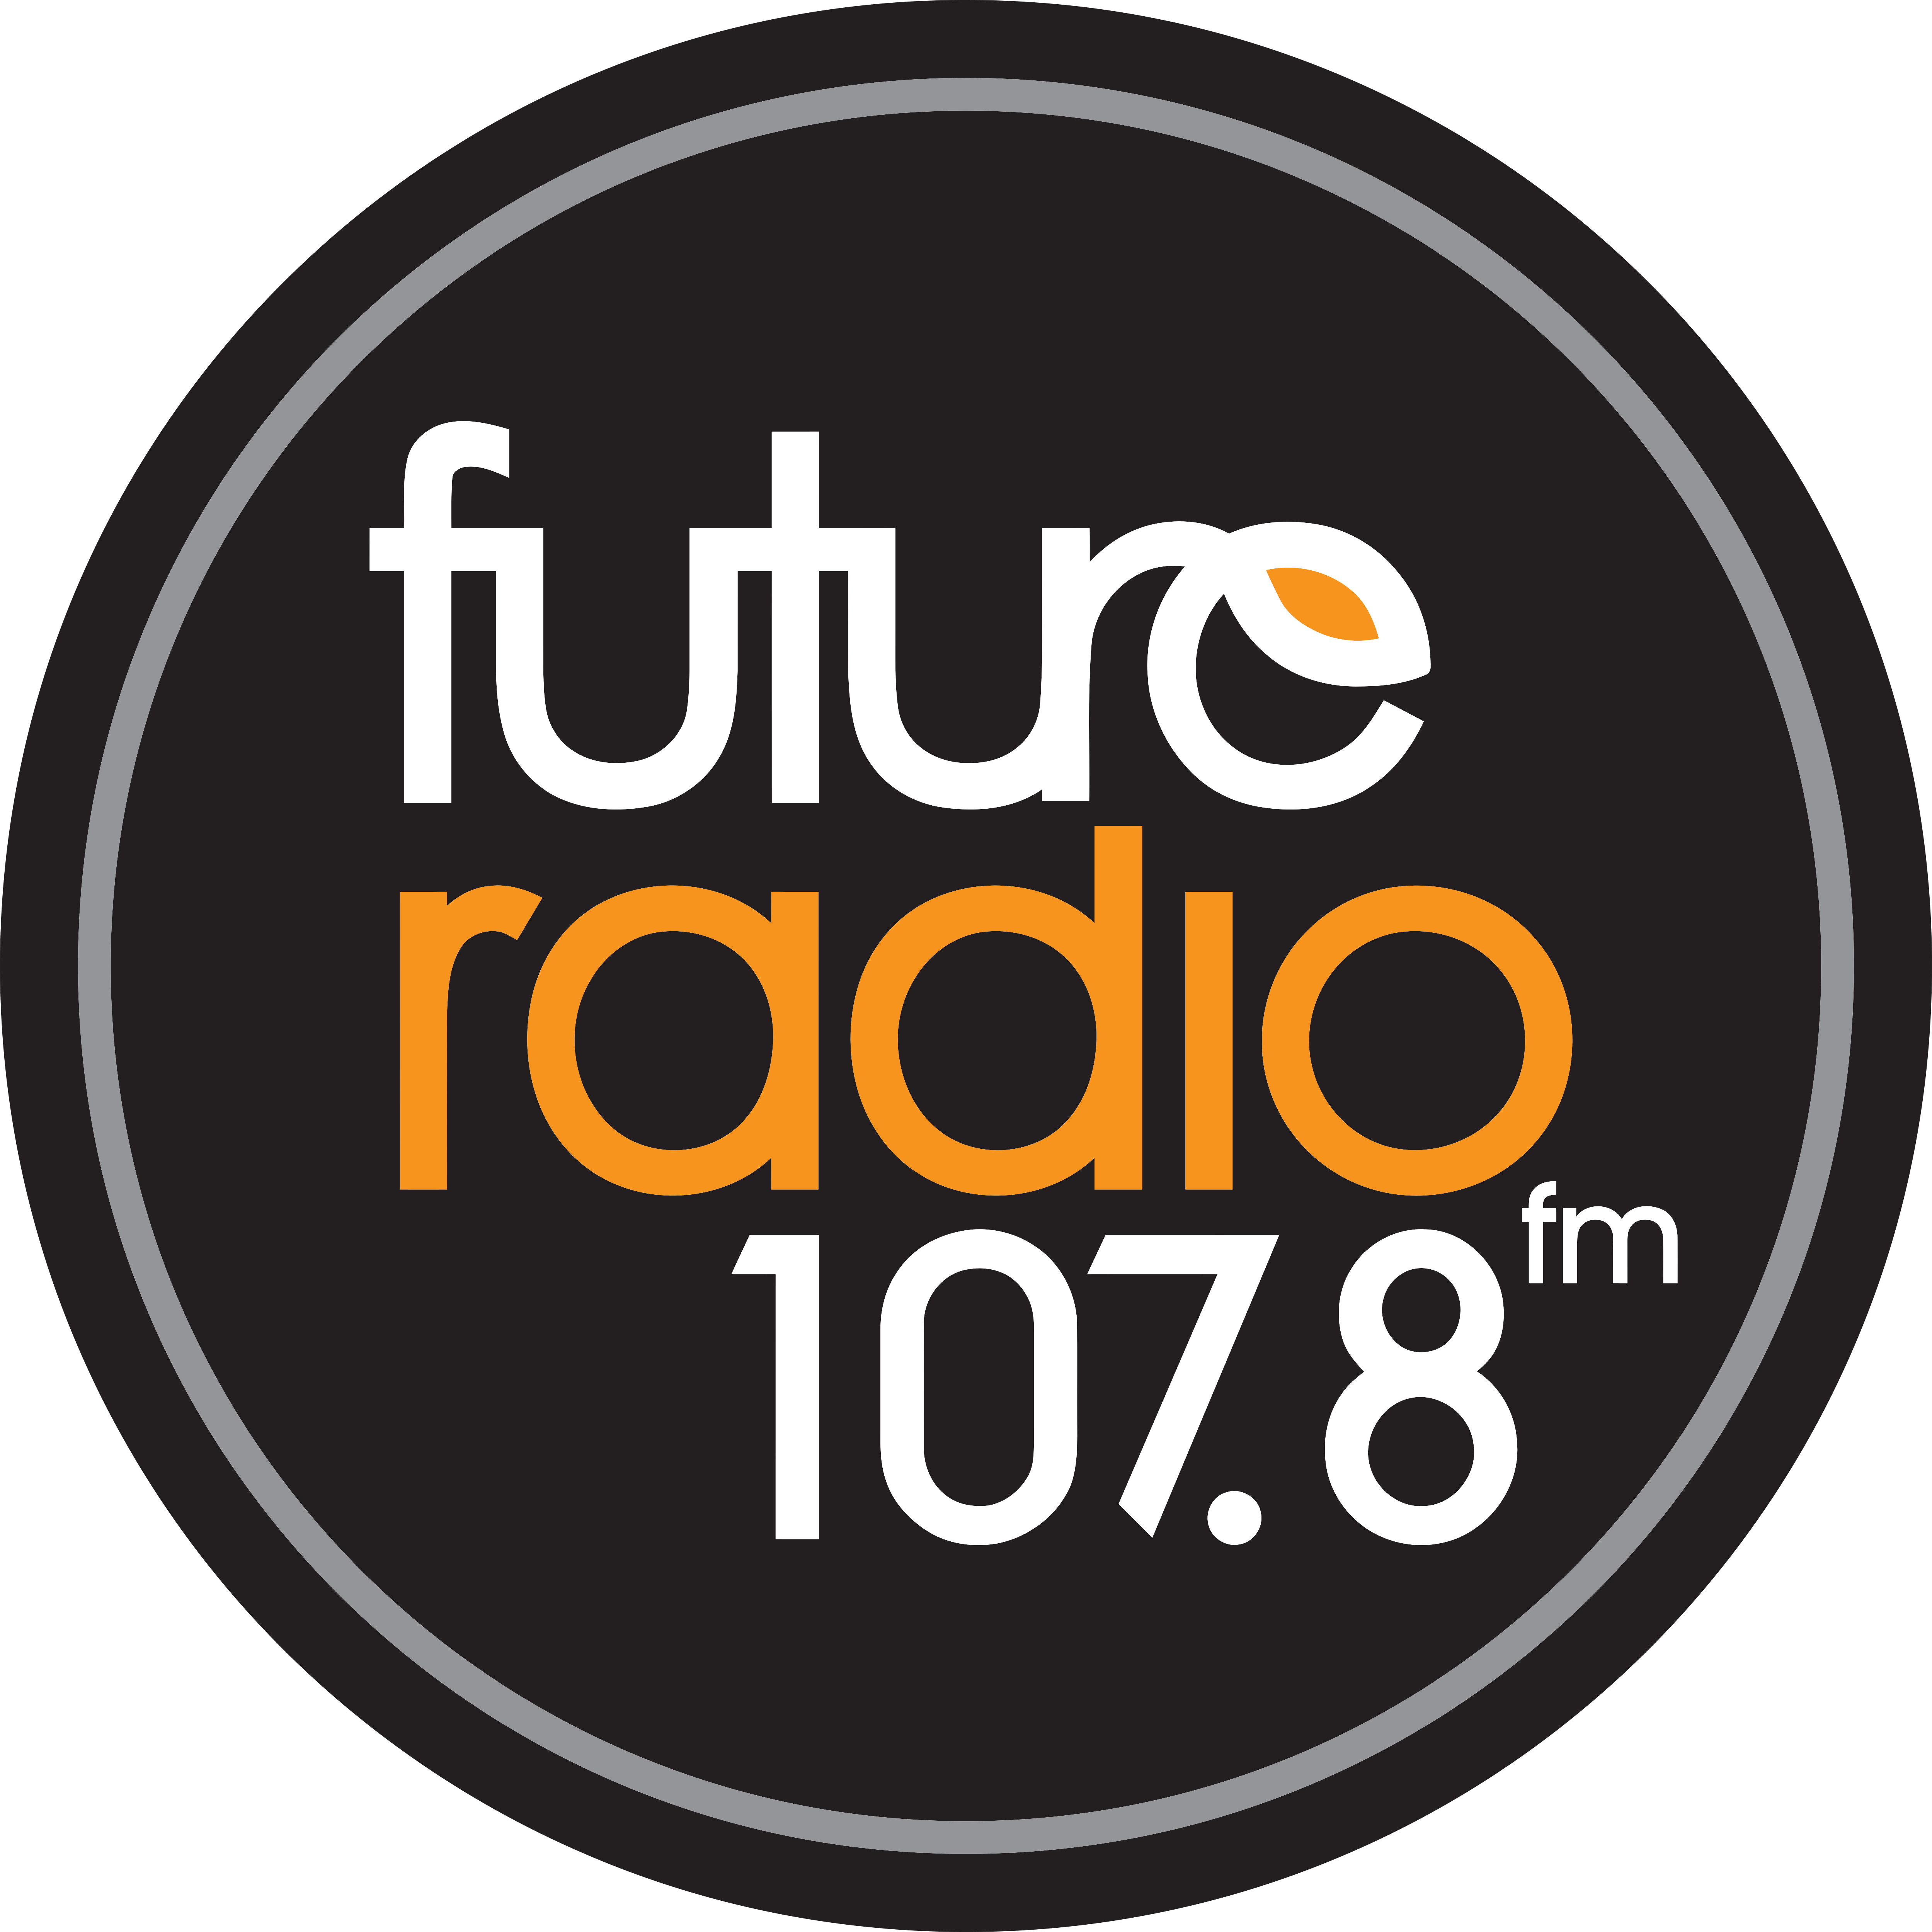 Radio logos